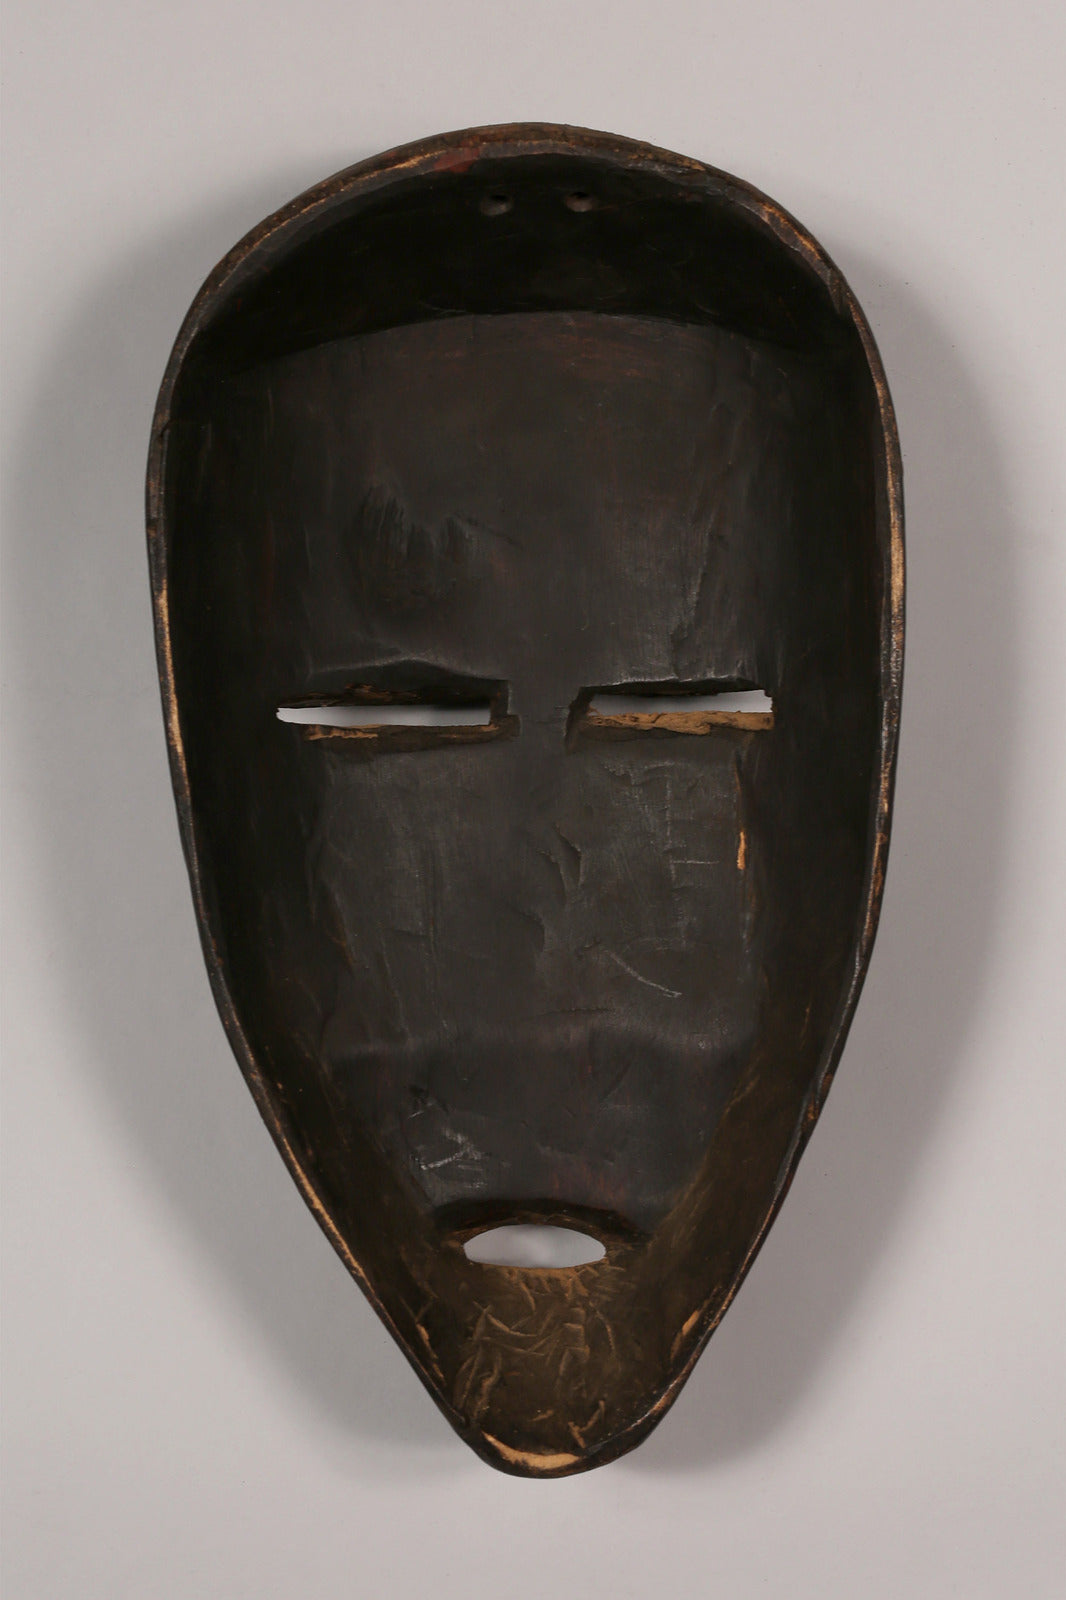 African Artwork  Wooden Masks  Vintage  Home Decor  Handcrafted Art - Masks  Dan Masks  African Masks  African Art